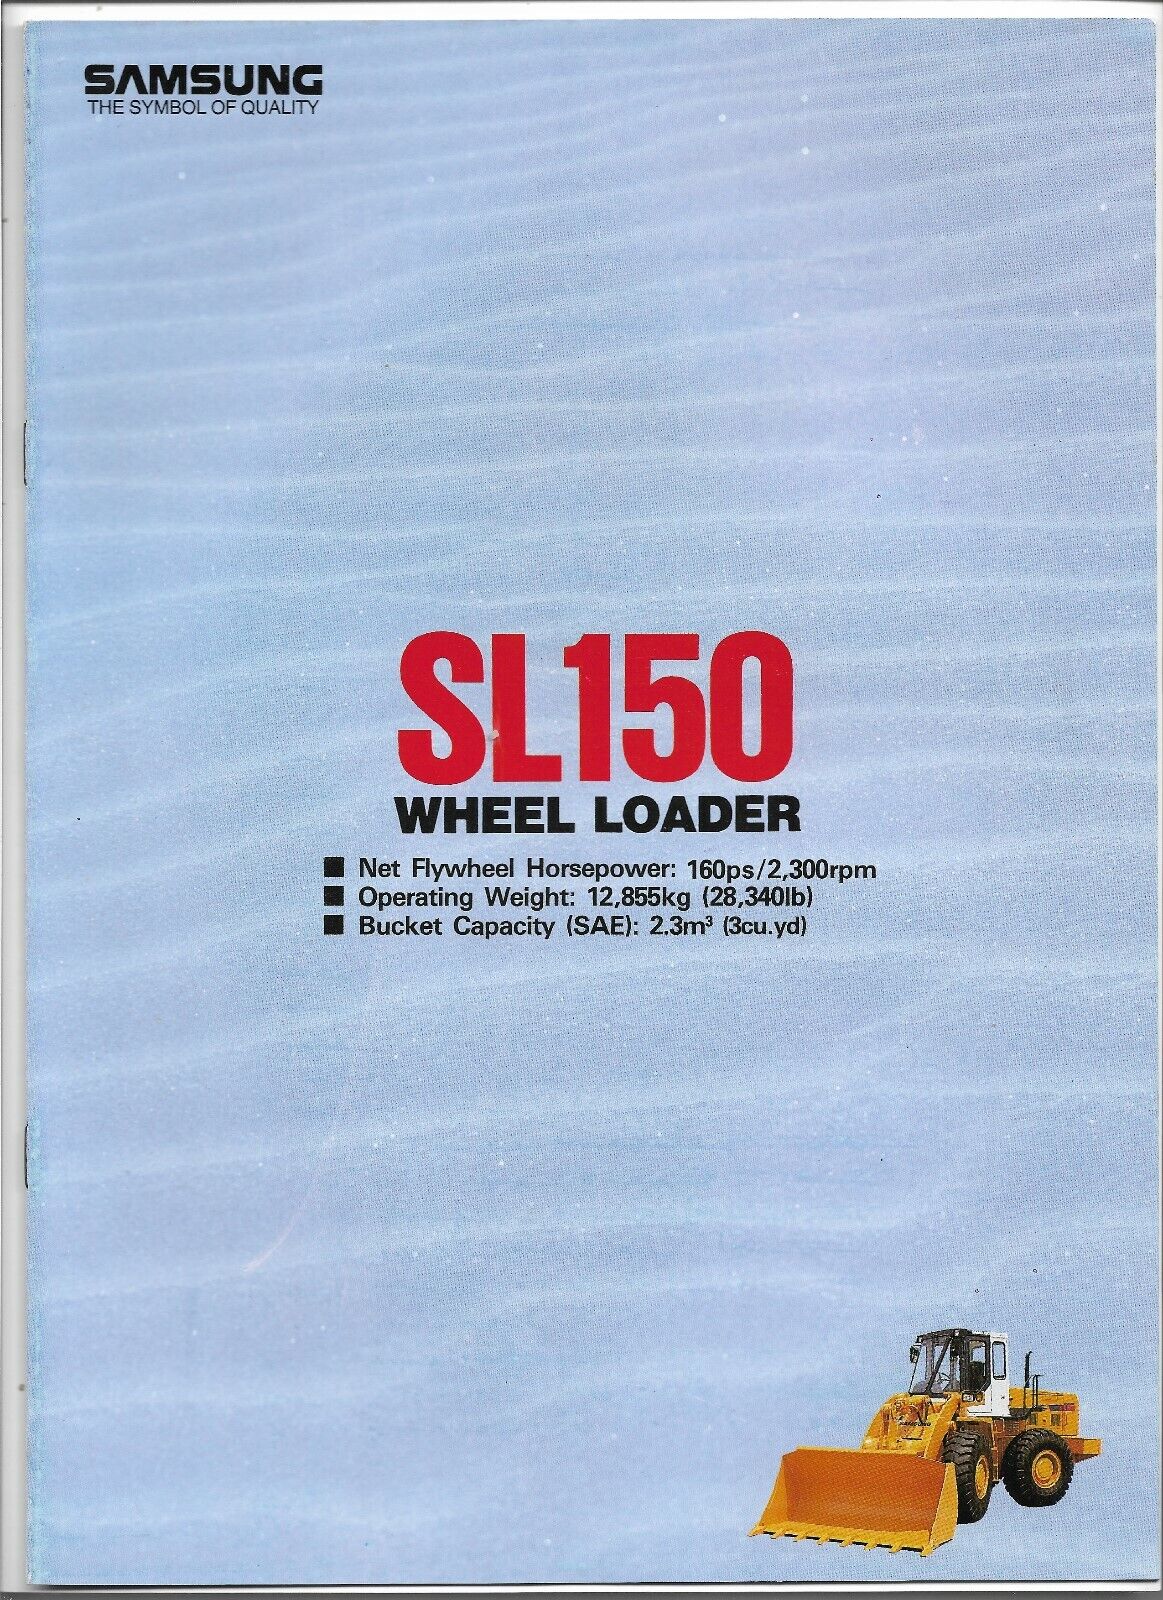 Original Samsung Model SE150 Wheel Loader Sales Brochure Form # SL150-911020-1